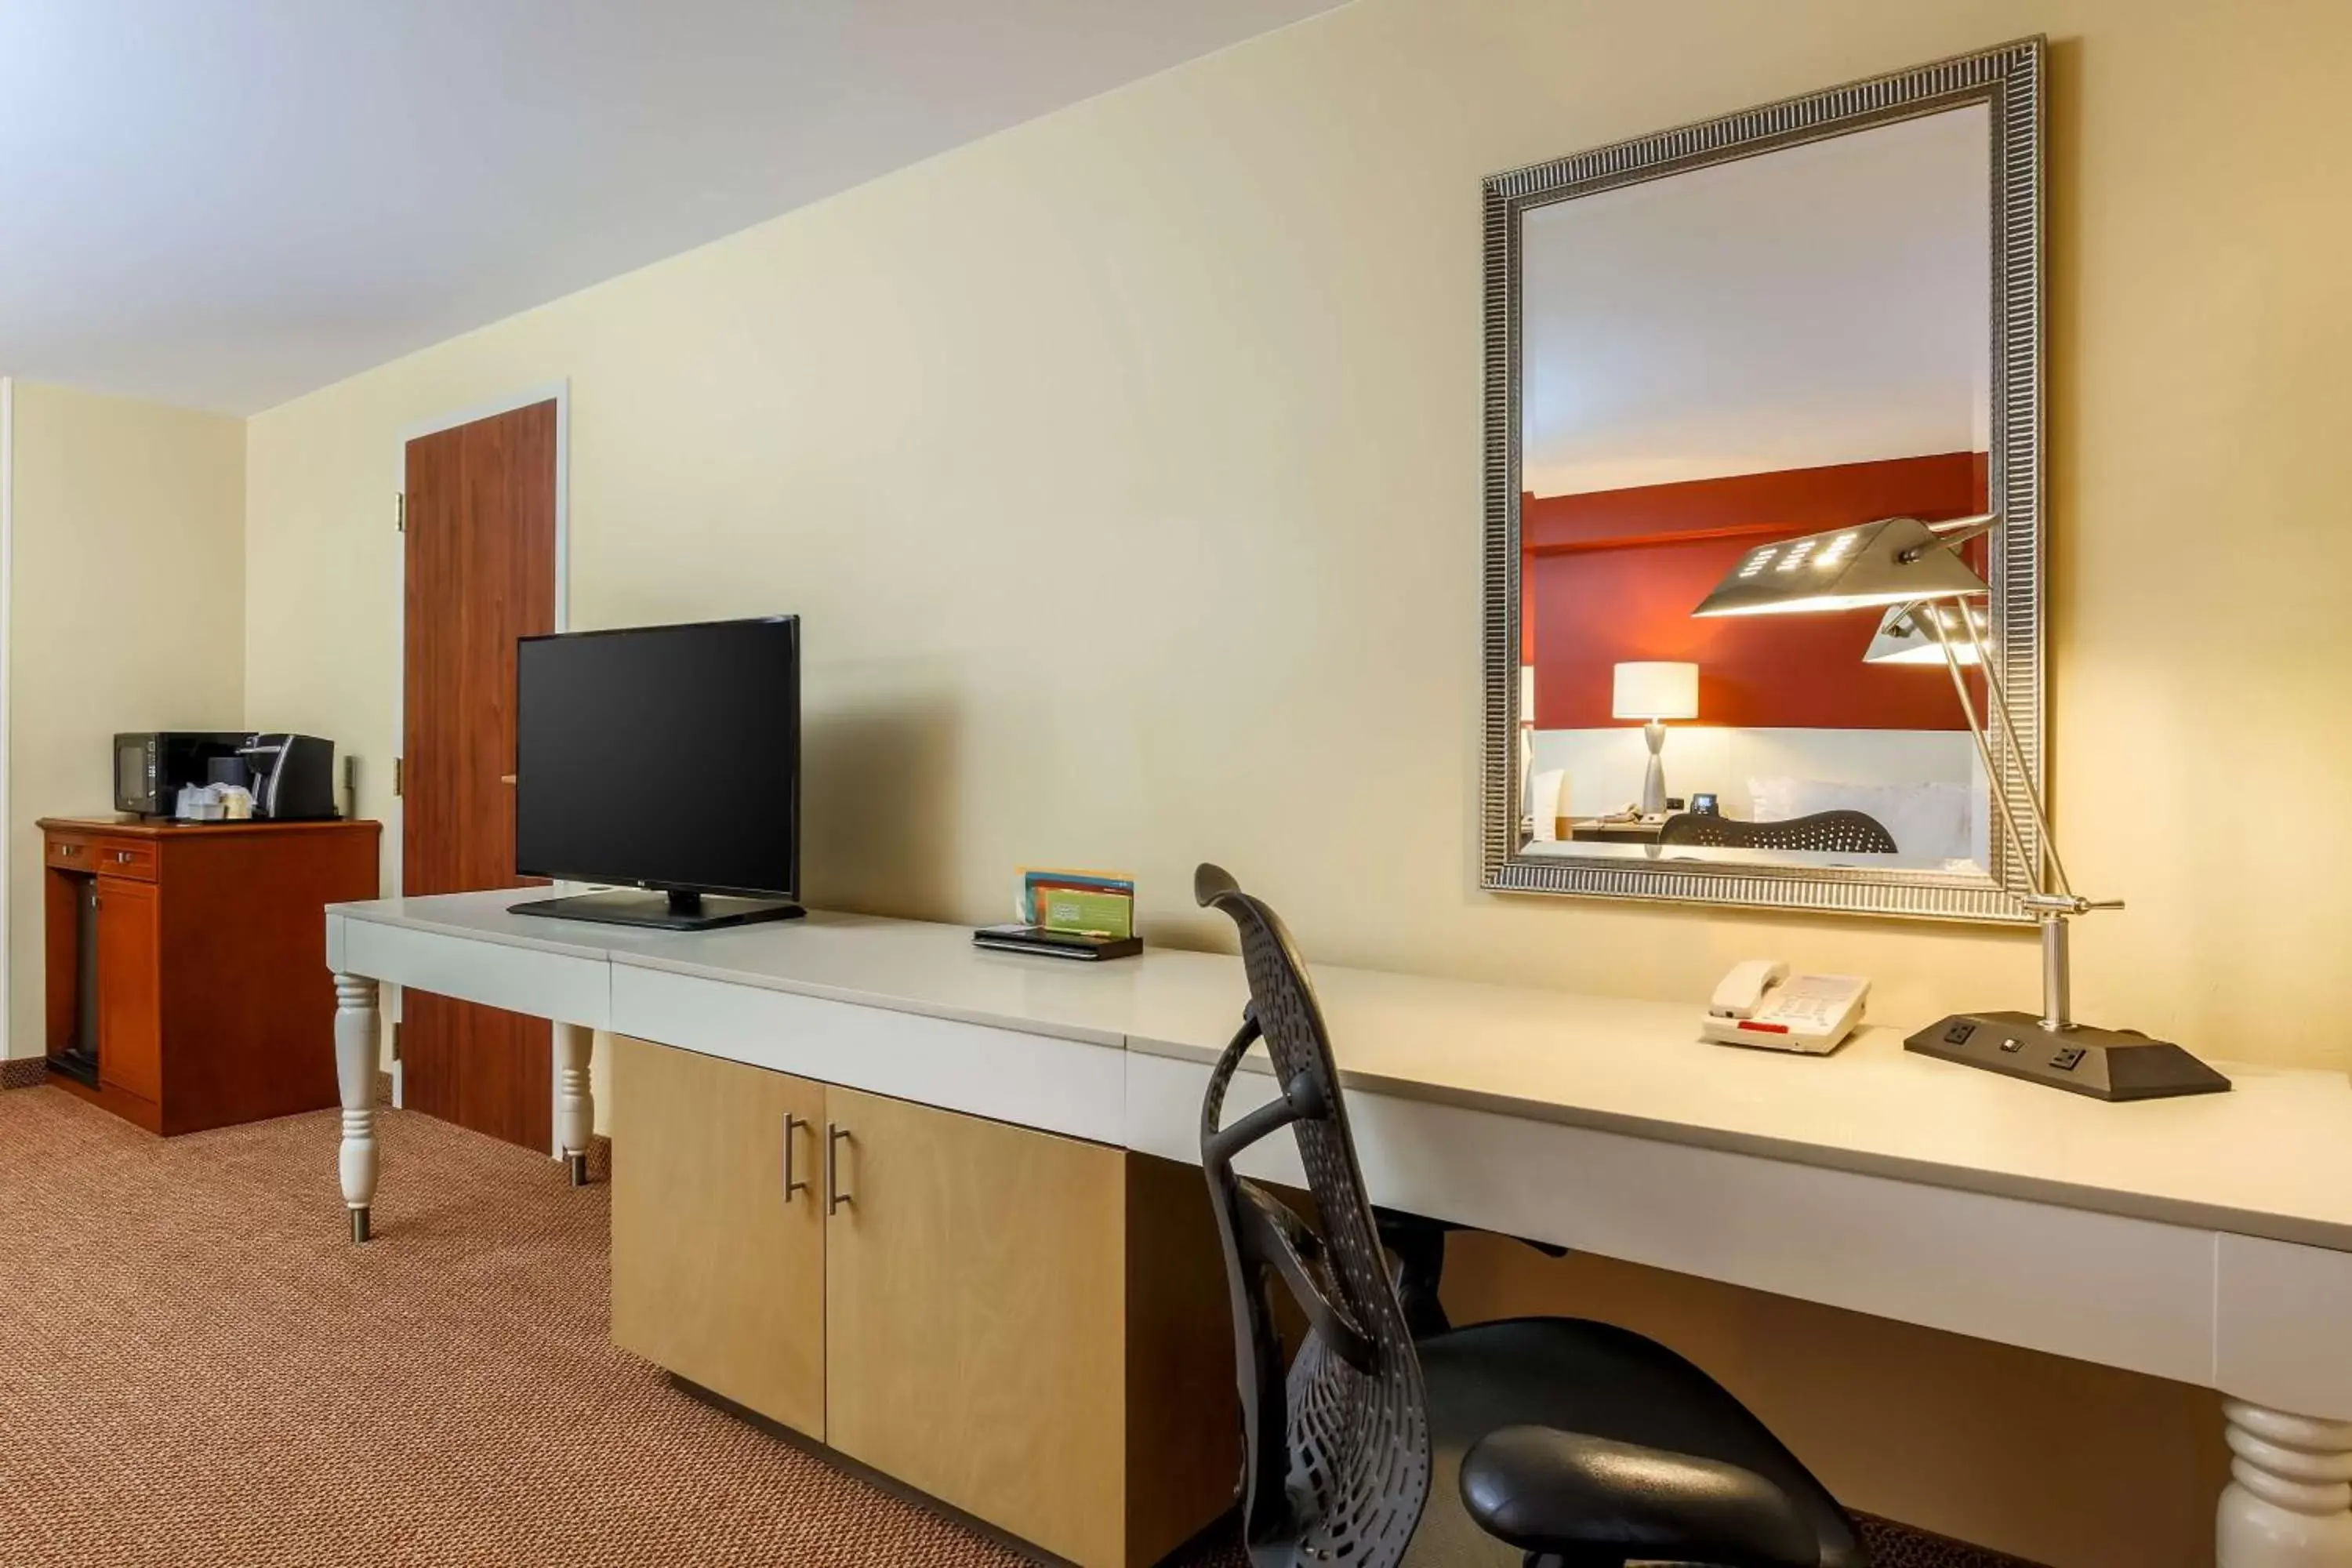 Bedroom, TV/Entertainment Center in Hilton Garden Inn Anchorage